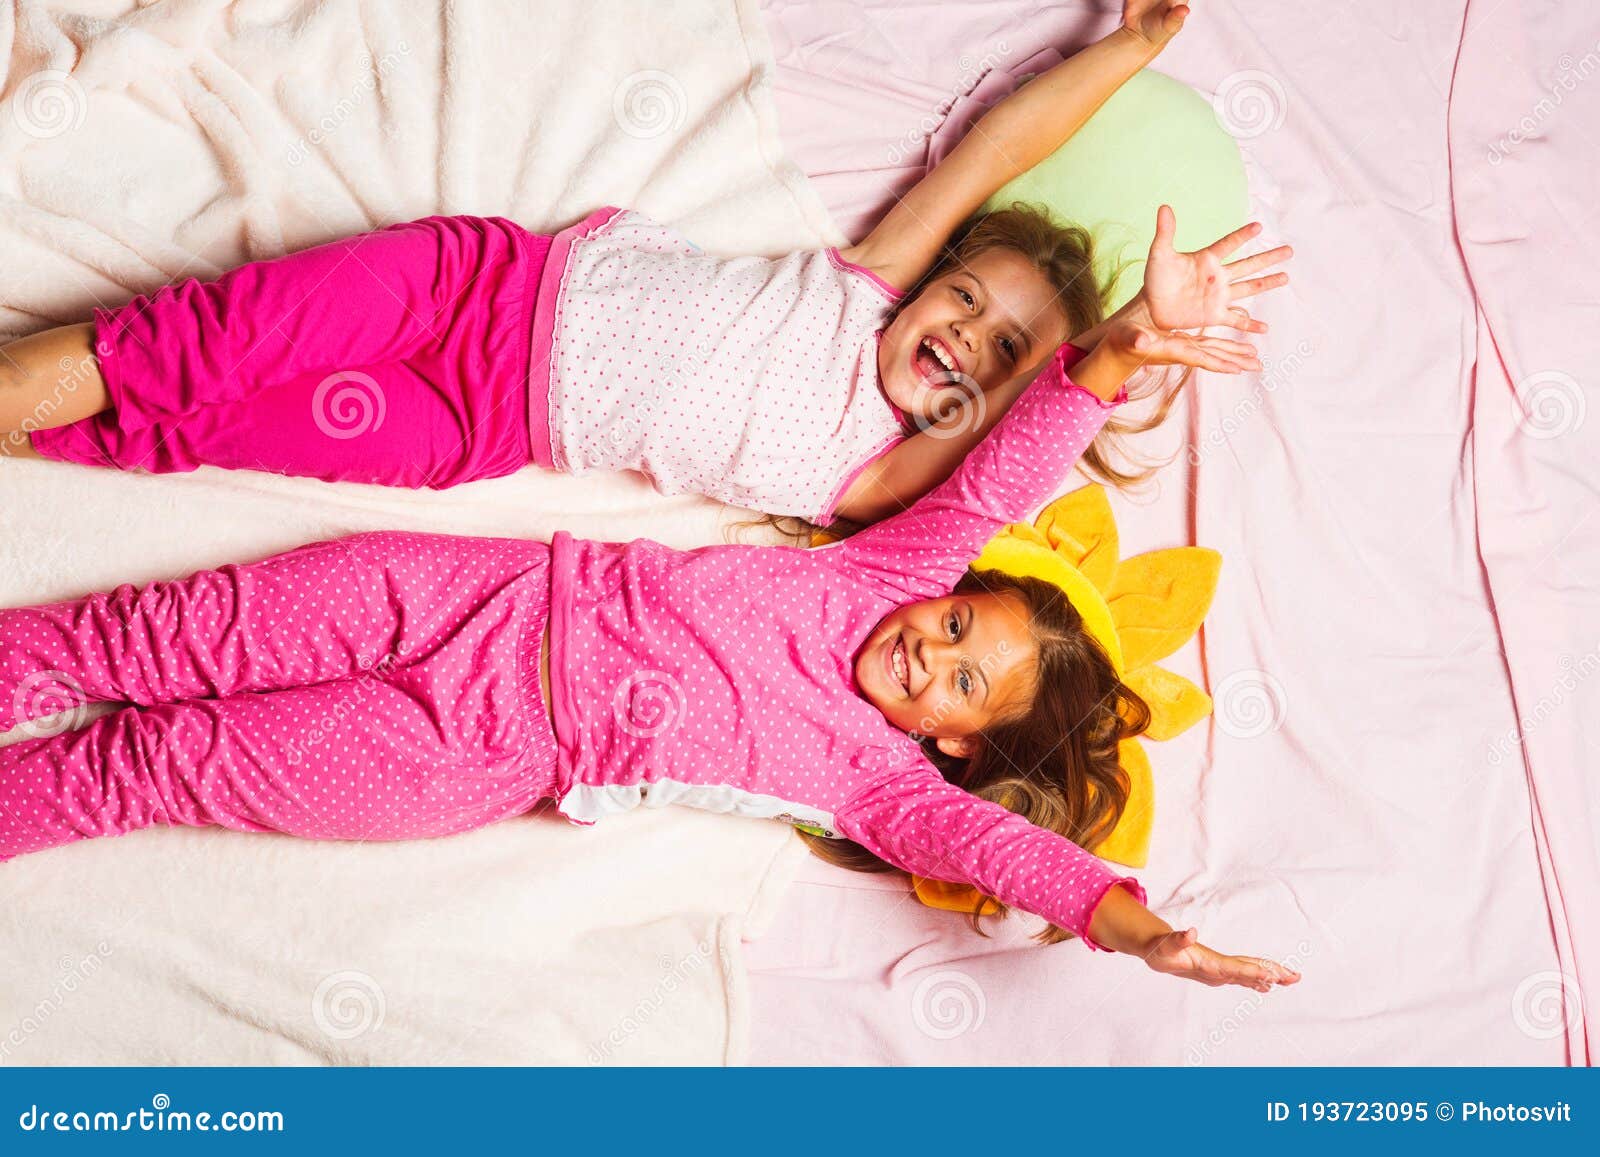 Как получить пижаму. Пижамная вечеринка с подушками. Пижама для пижамной вечеринки. Пижамная вечеринка для детей. Пижама на ночевку.